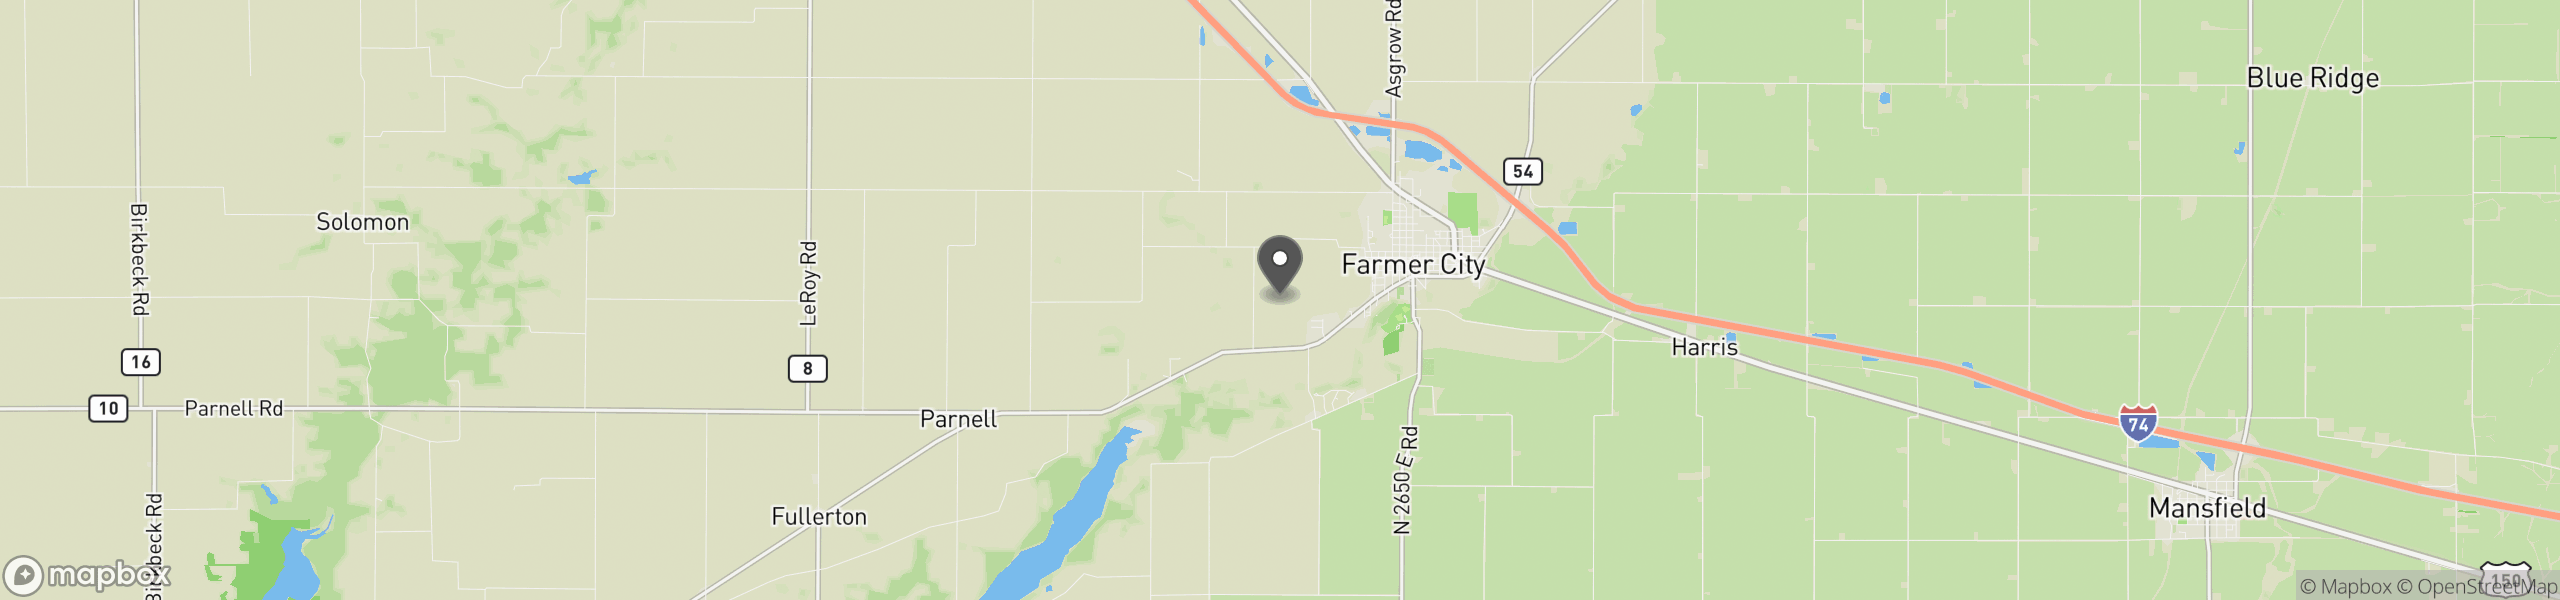 Farmer City, IL